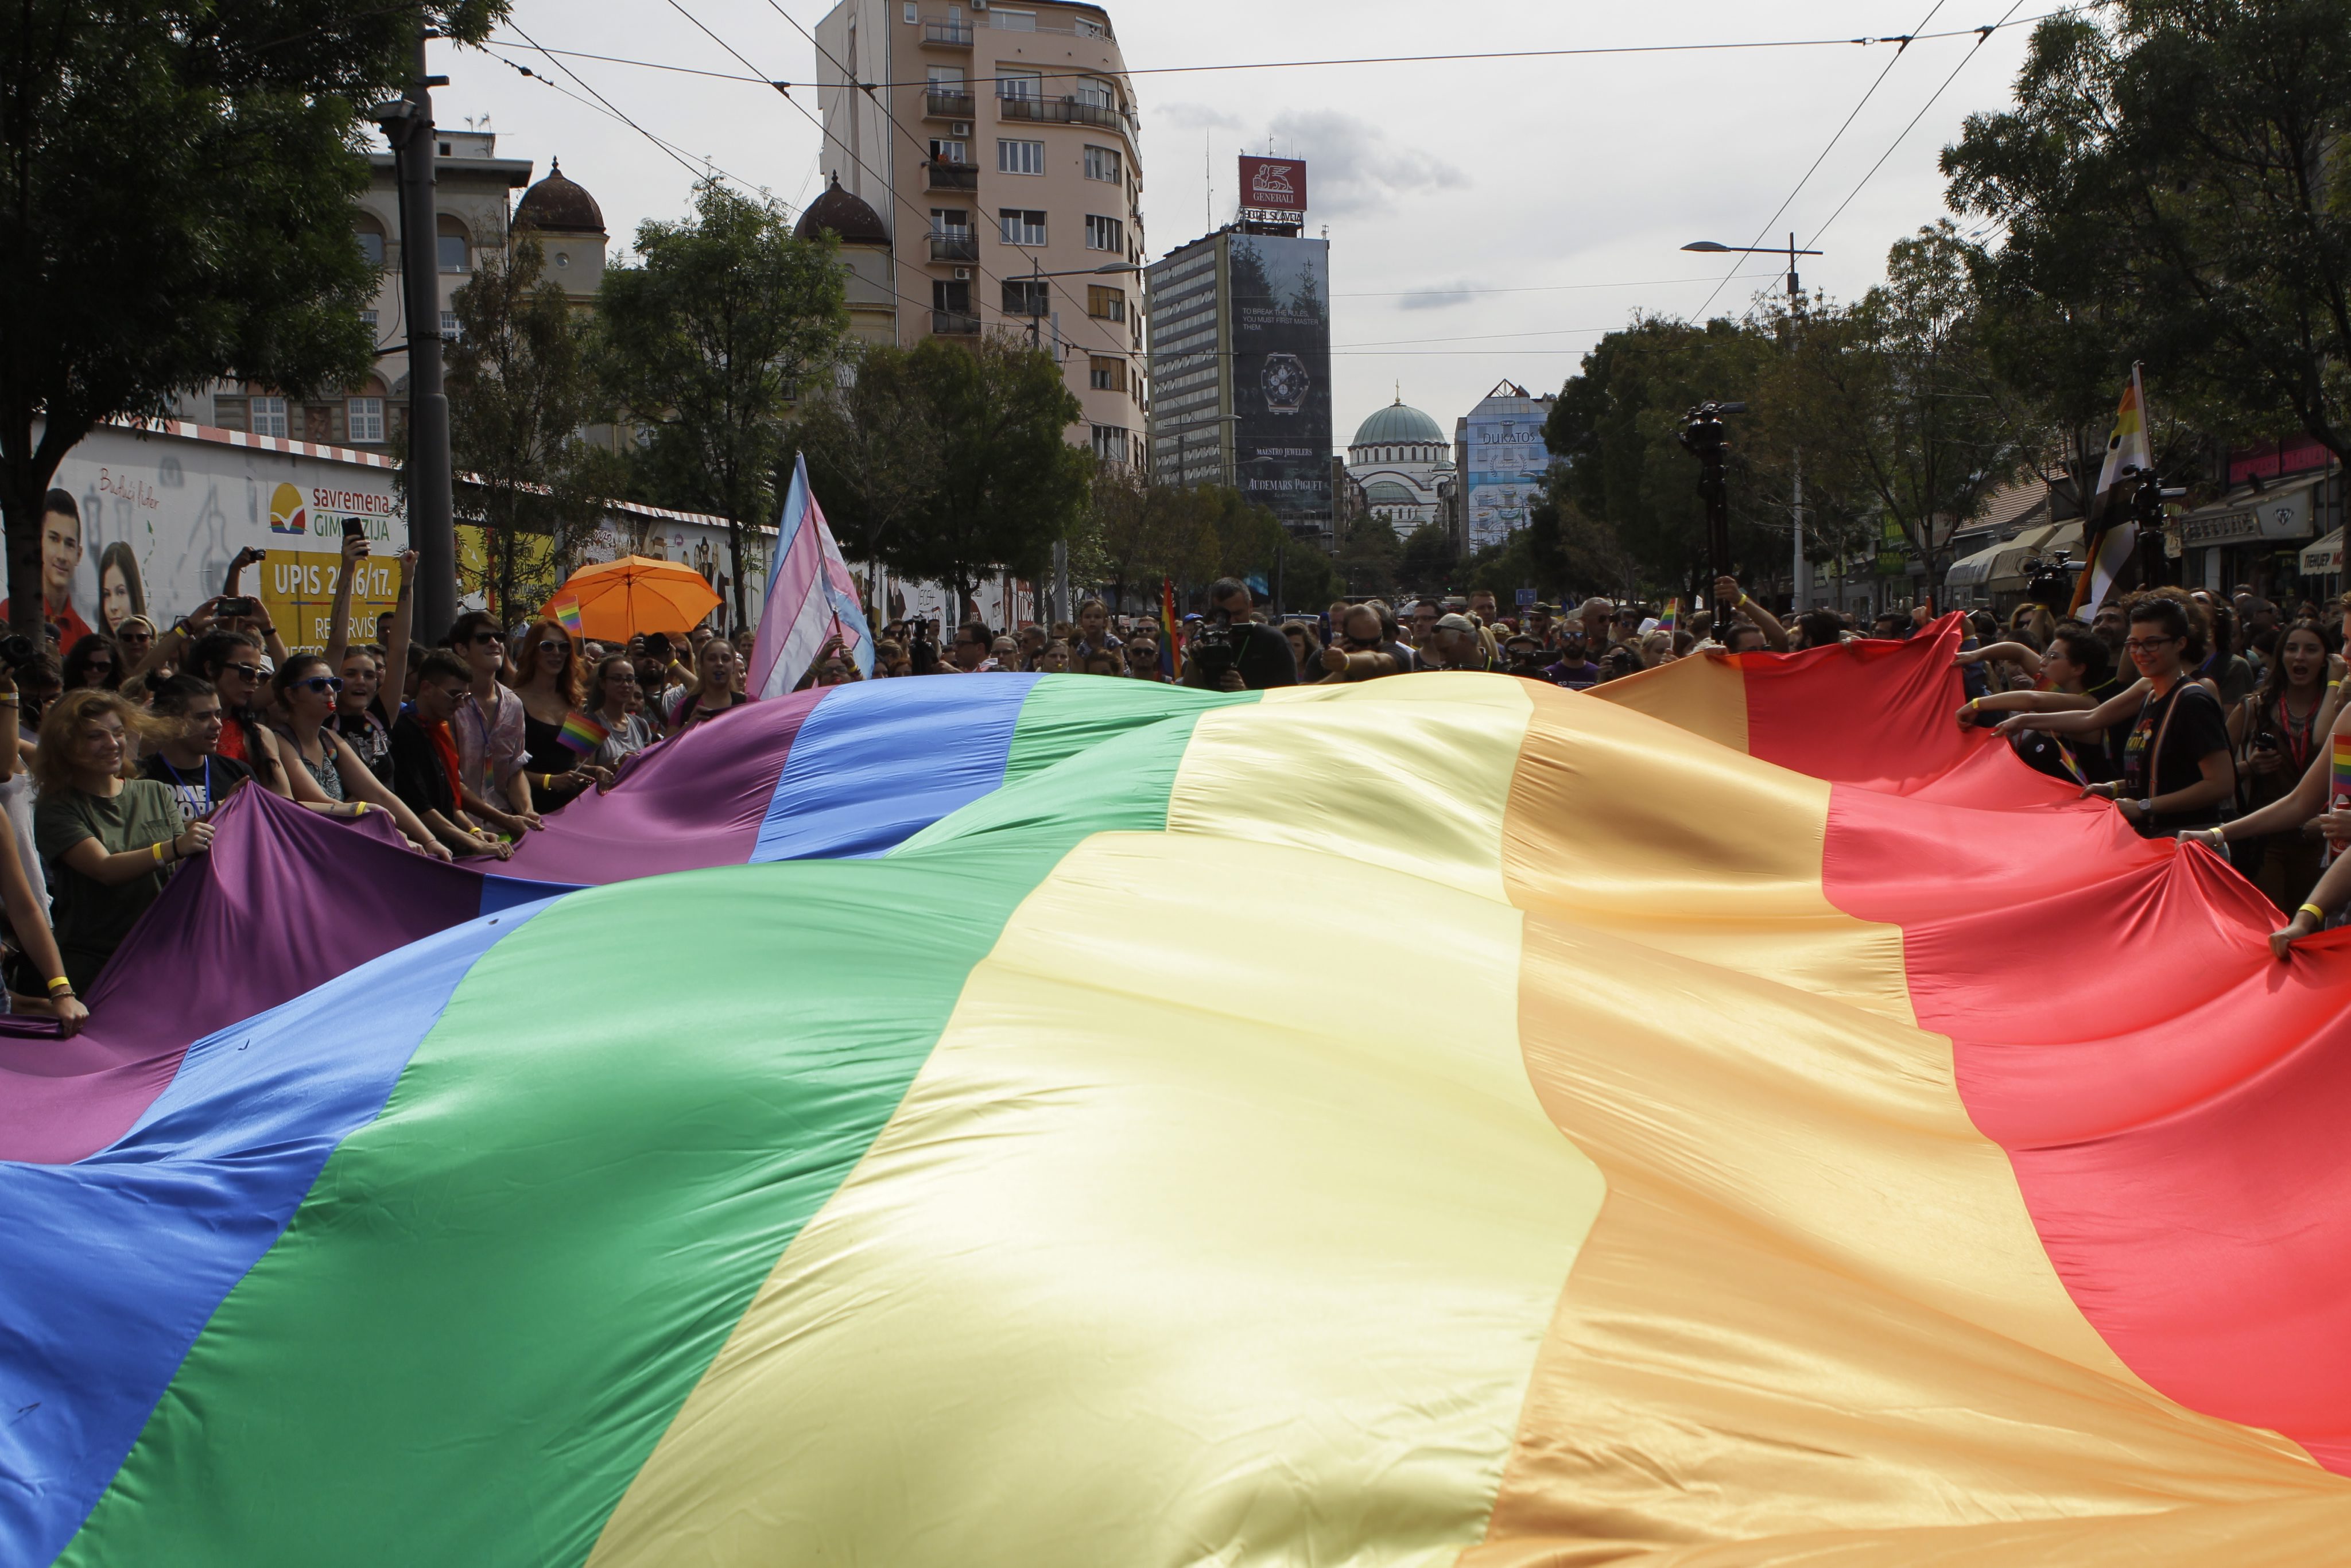 Beograd Pride konačno bez incidenata: Ljubav menja svet